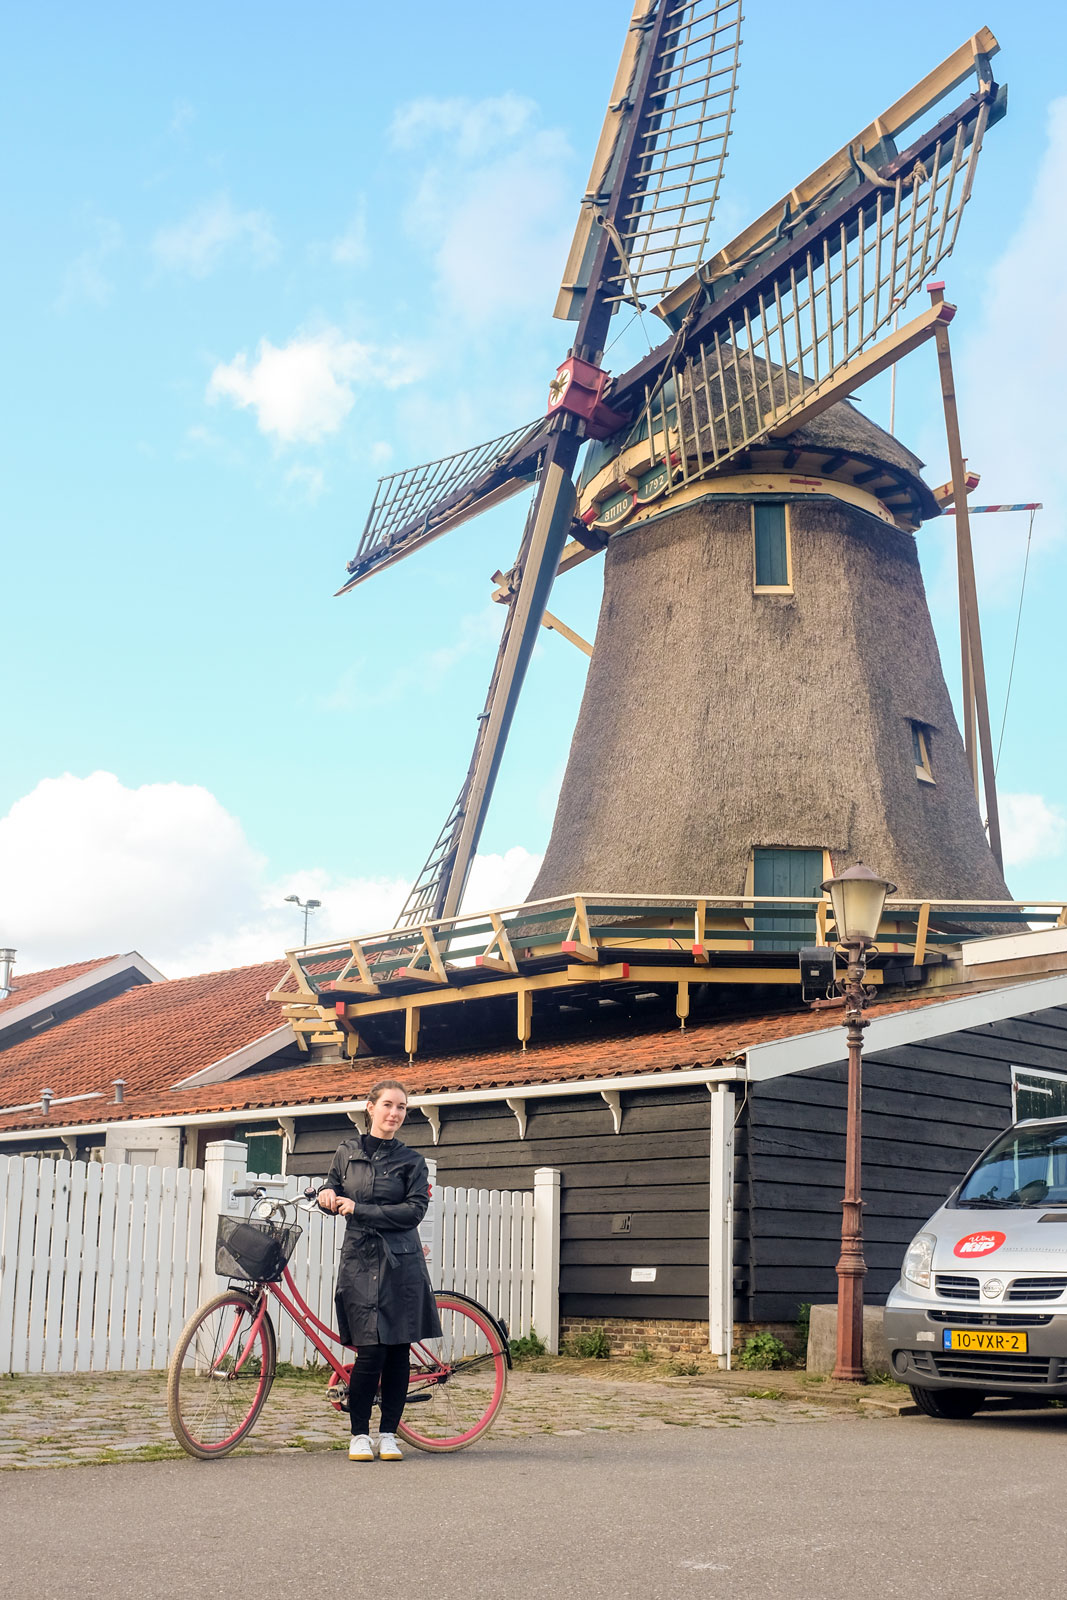 Alyssa with a bike near a windmill in Amsterdam